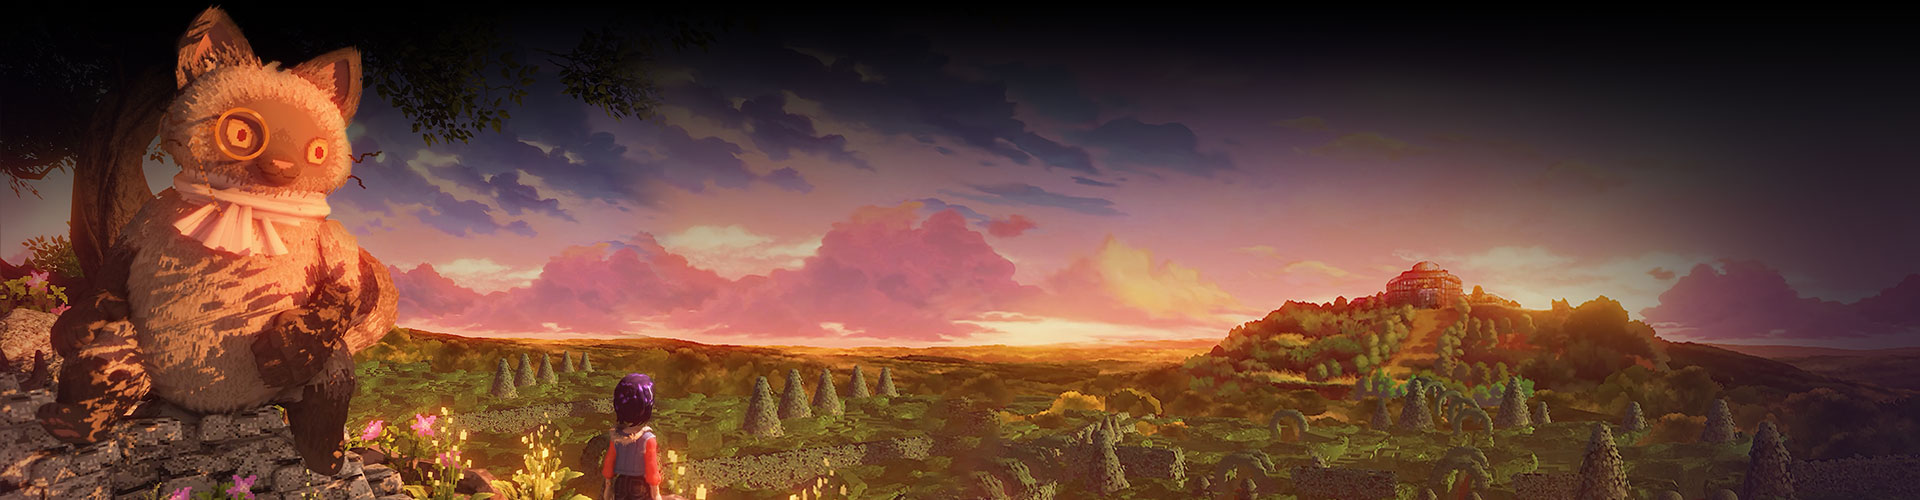 Ravenlok regardant vers un bâtiment de l’autre côté d’une vallée avec un grand chat portant un monocle à ses côtés.